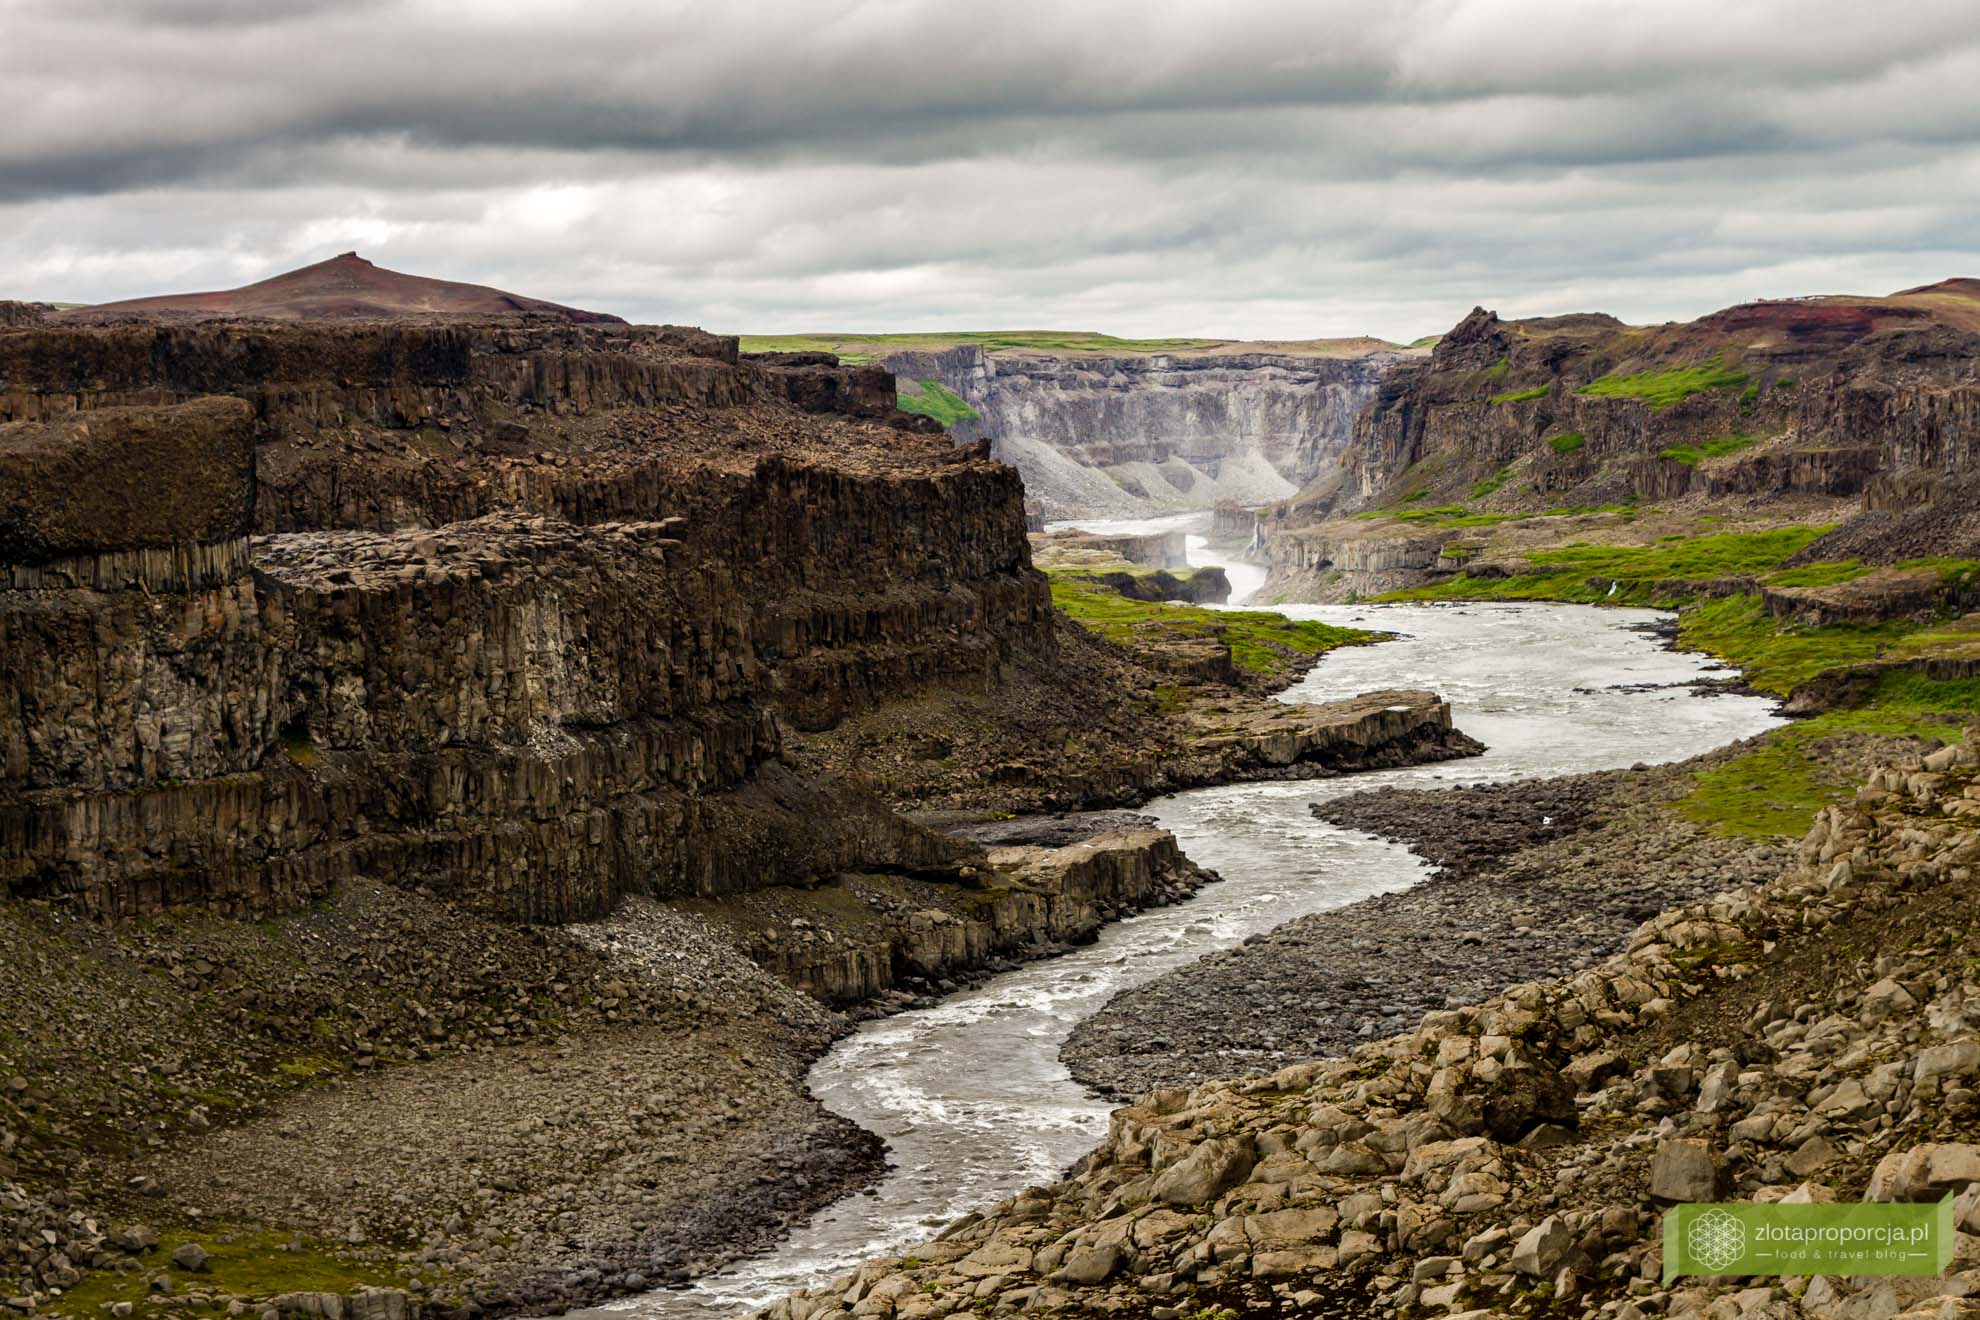 wodospad Dettifoss,Islandia, Islandia atrakcje, wodospady na Islandii, Islandia ciekawe miejsca; 